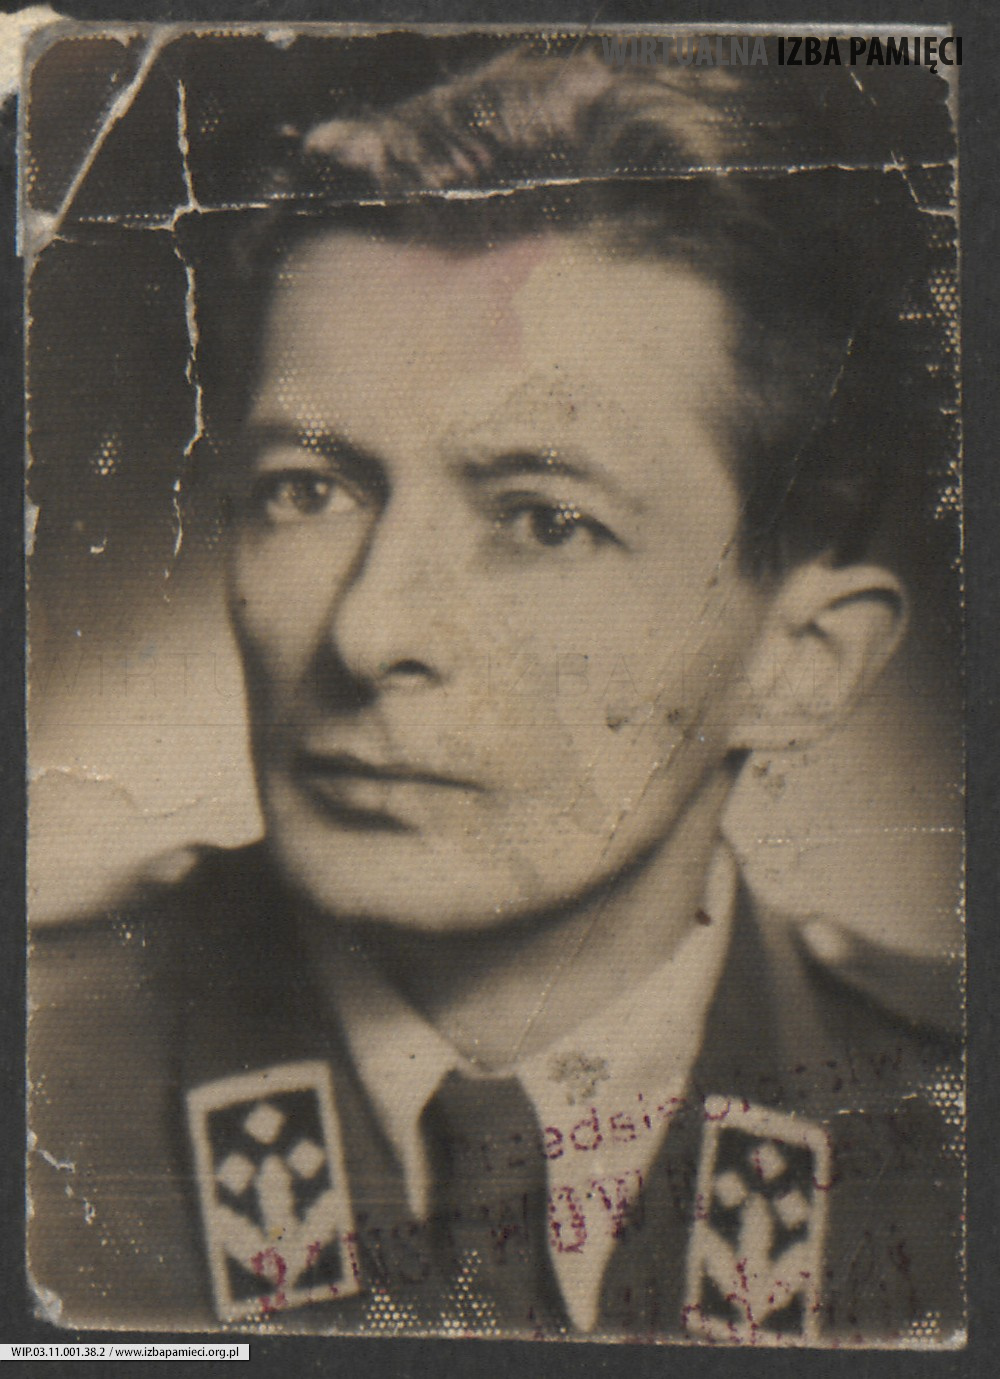 1960. Lubaczów. Roman Gutowski.